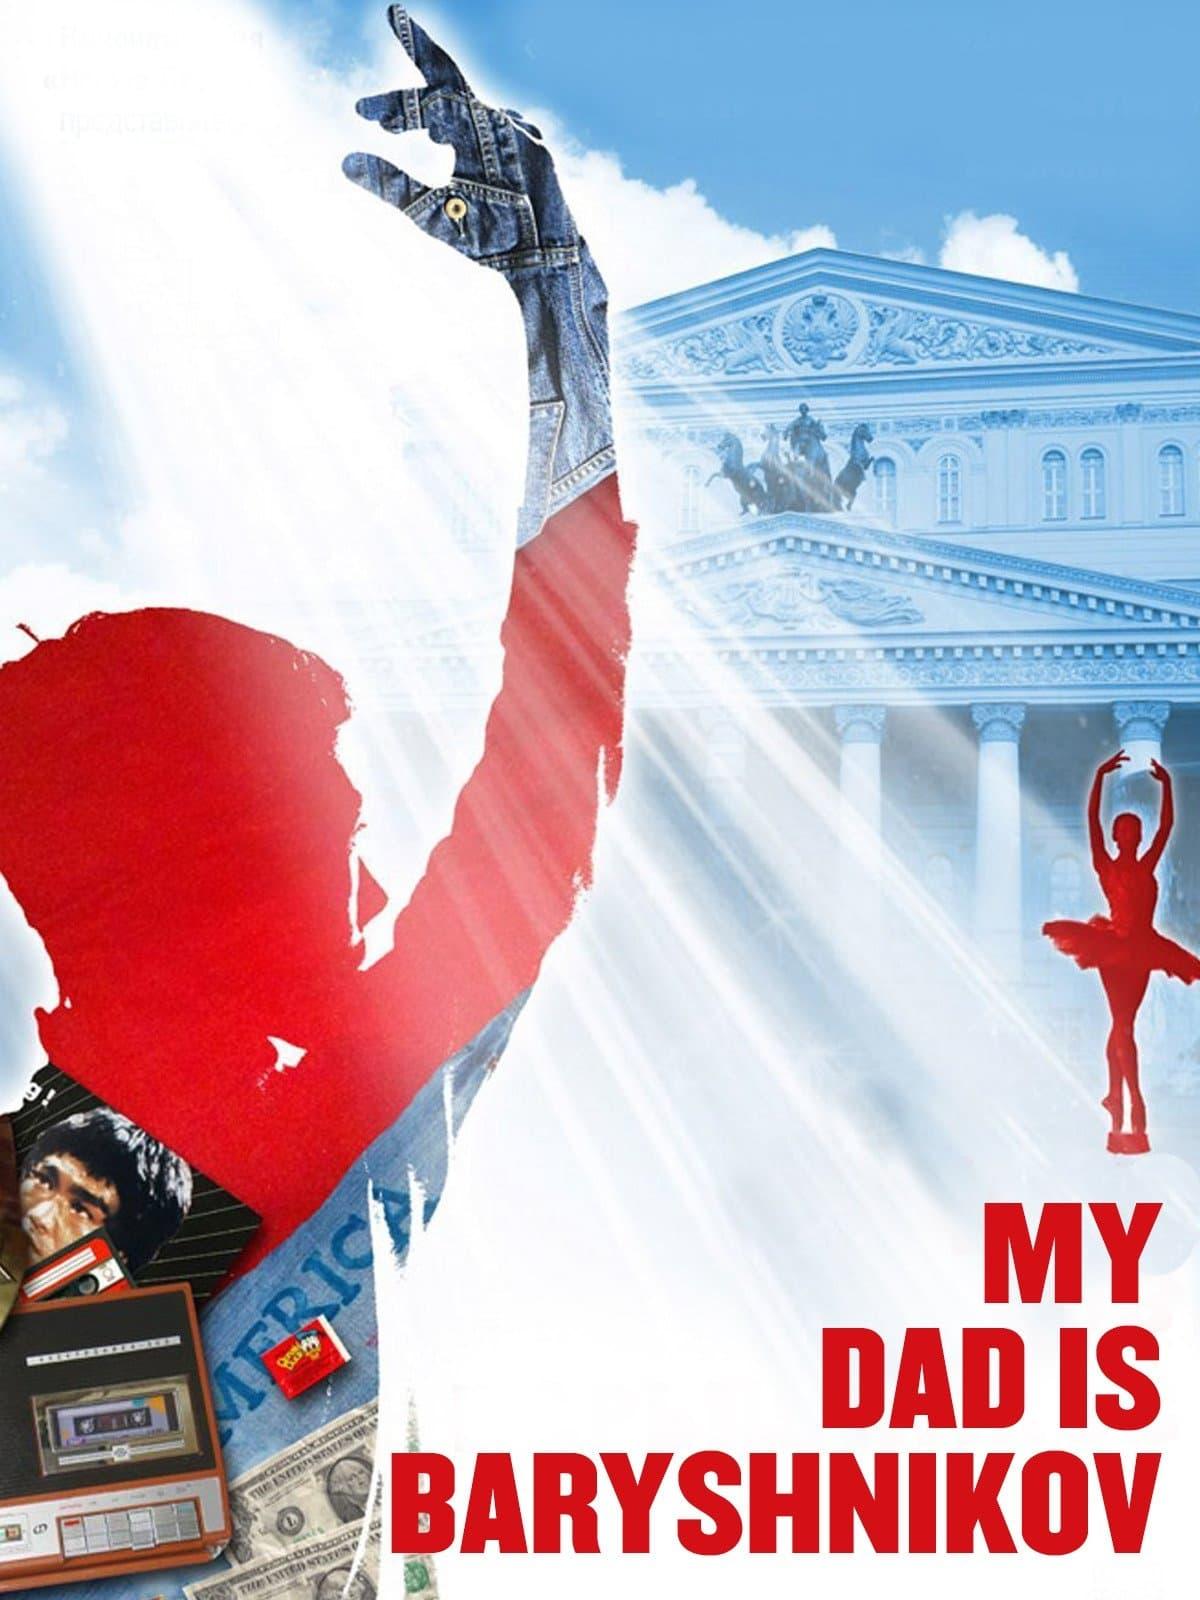 My Dad Baryshnikov poster